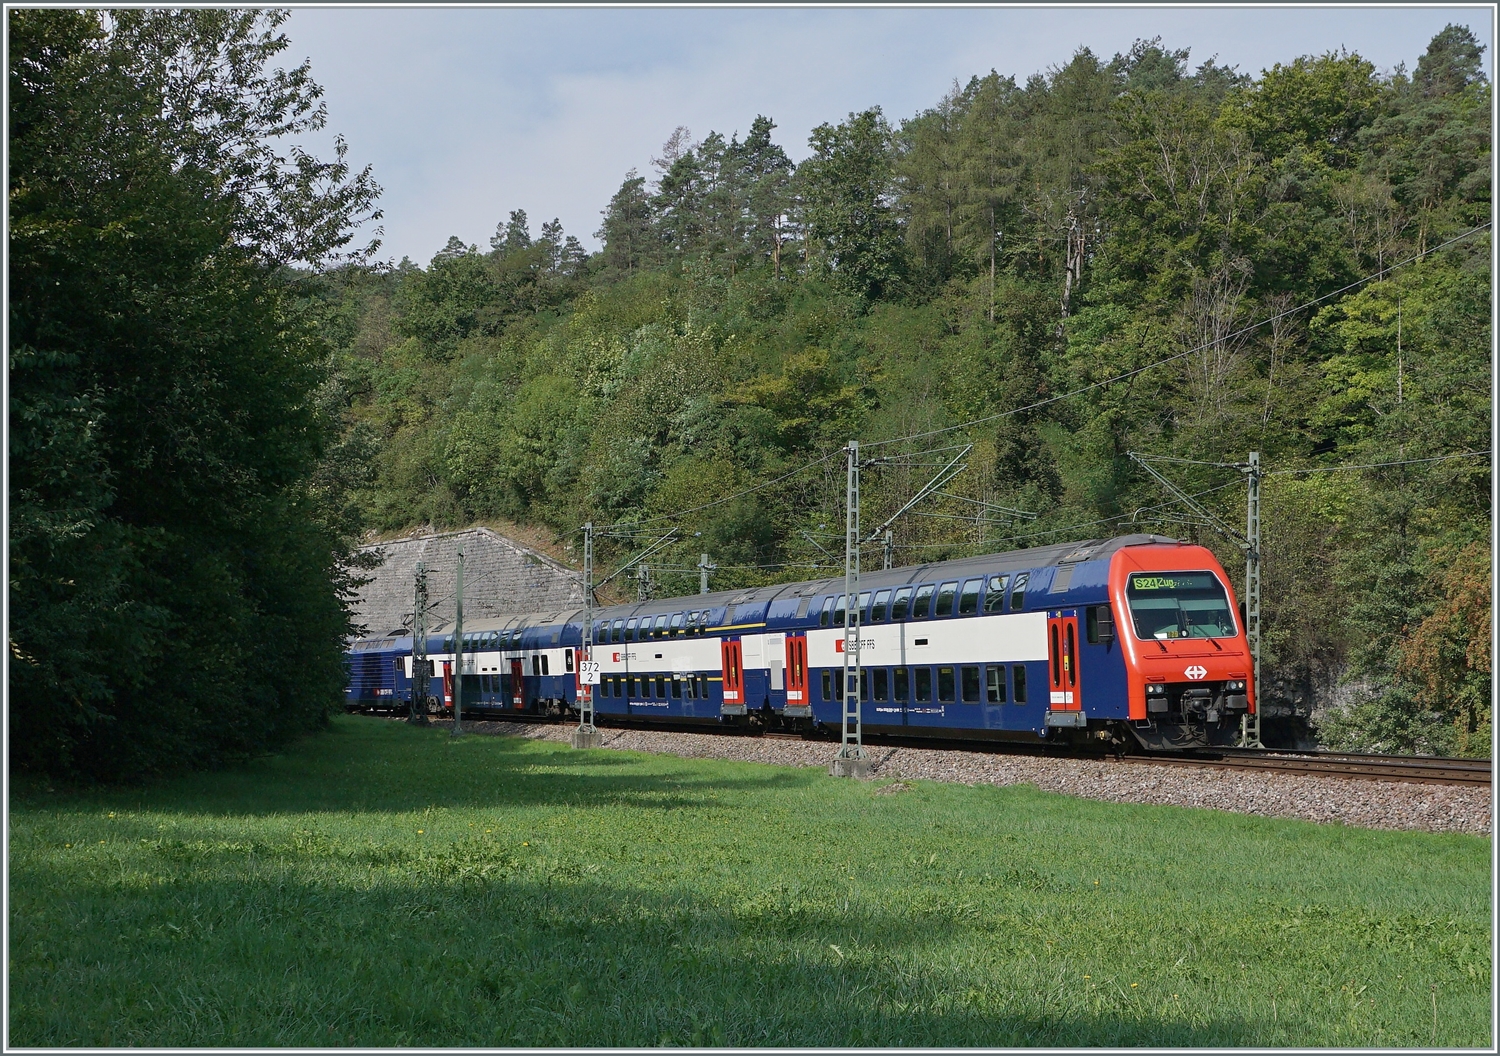 Deutsche Gleise und Fahrleitung, aber die S24 wird nicht bis nach Deutschland fahren, sondern in Kürze in Thayngen enden. 

30. August 2022